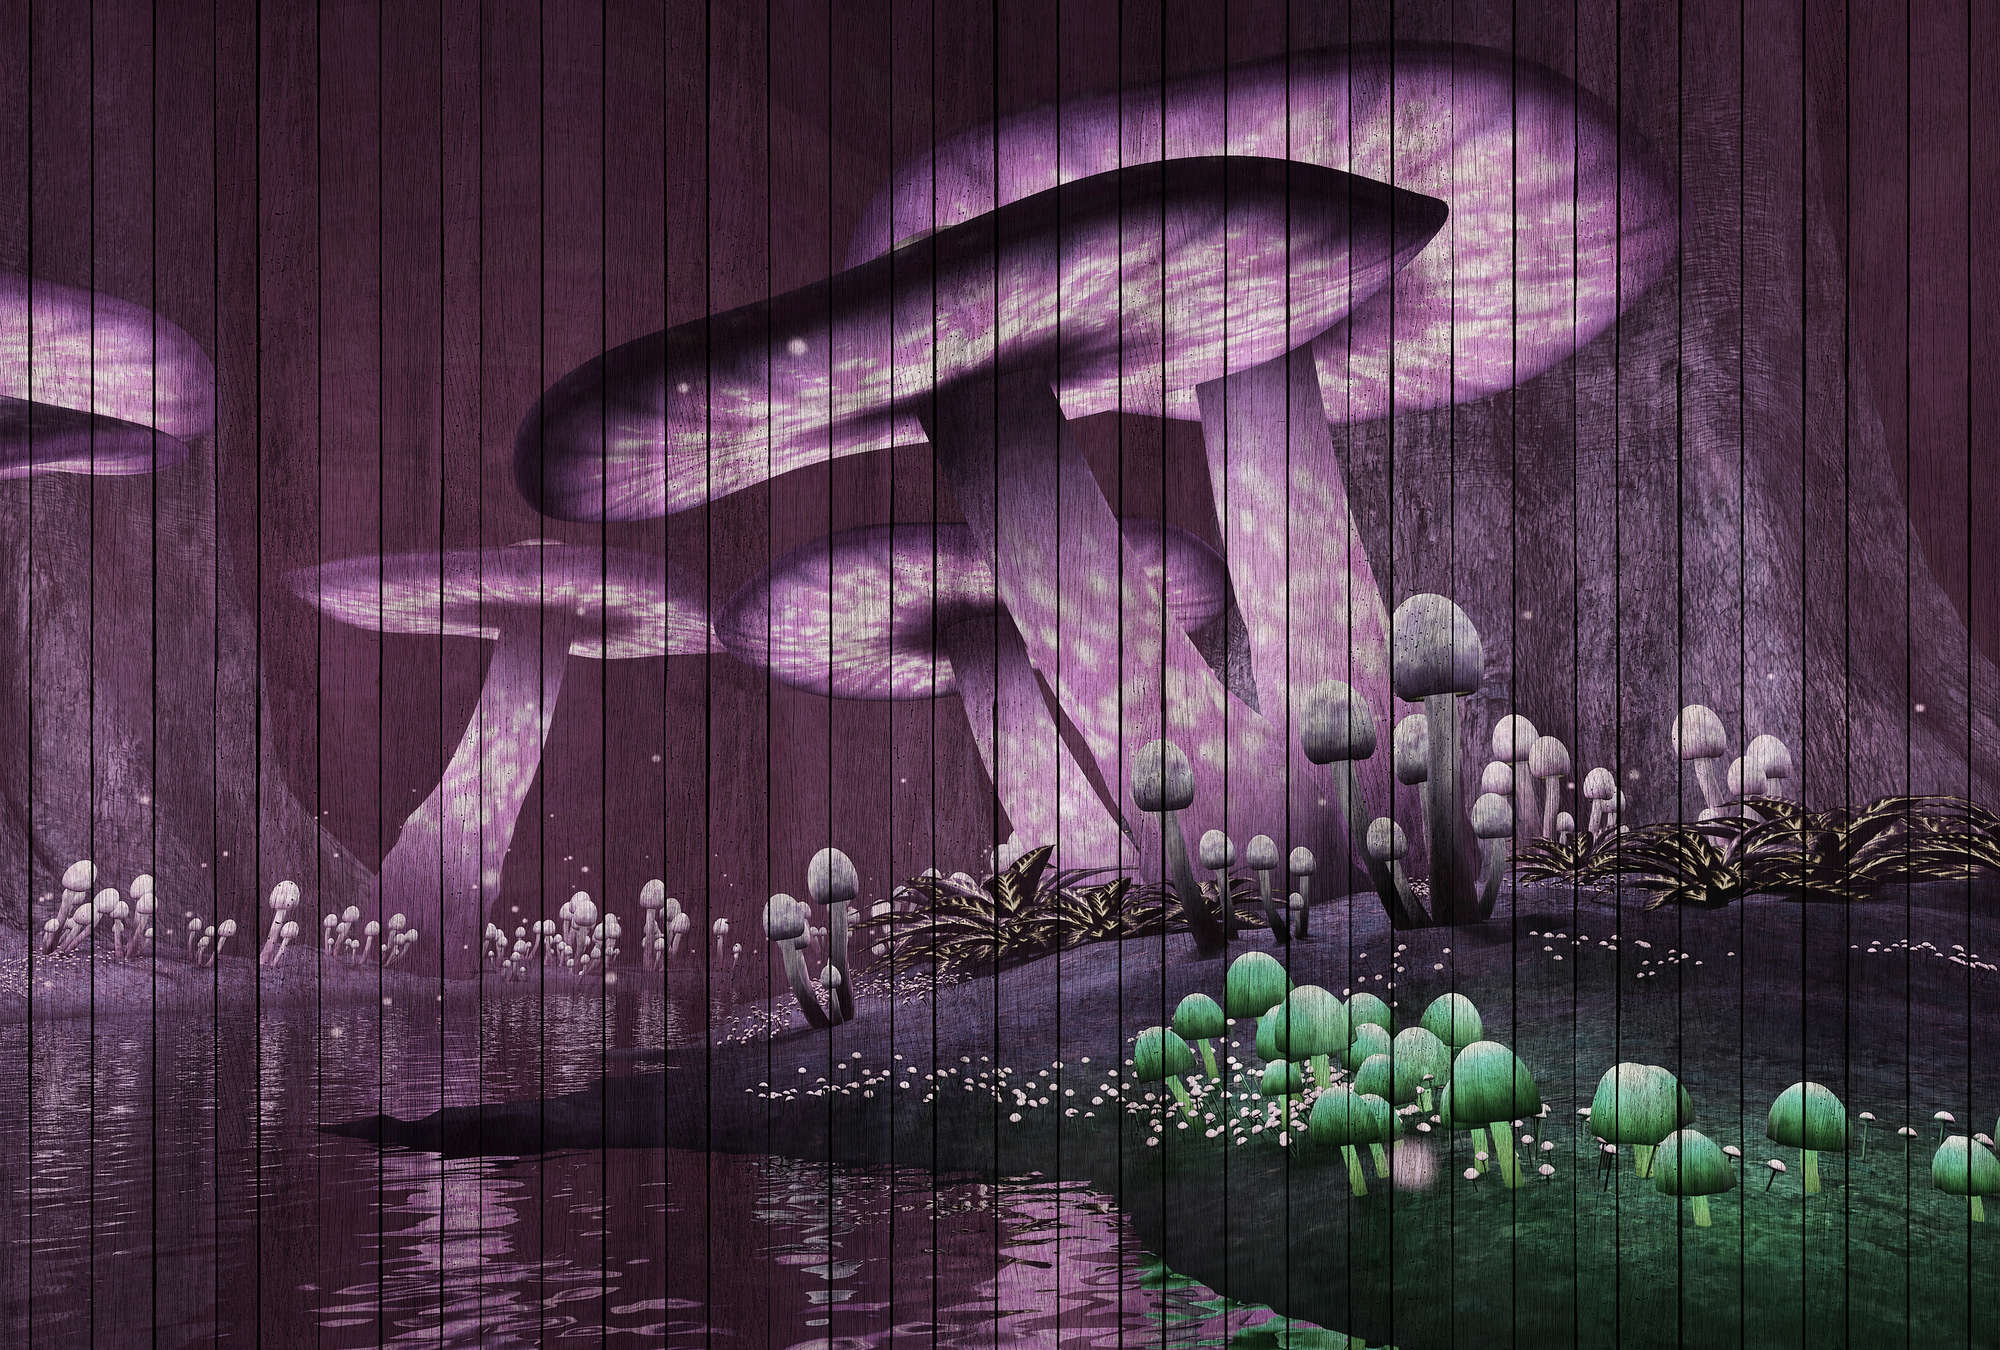             Fantasy 2 - Papel Pintado Bosque Mágico con Estructura de Paneles de Madera - Verde, Violeta | Premium Smooth Non-woven
        